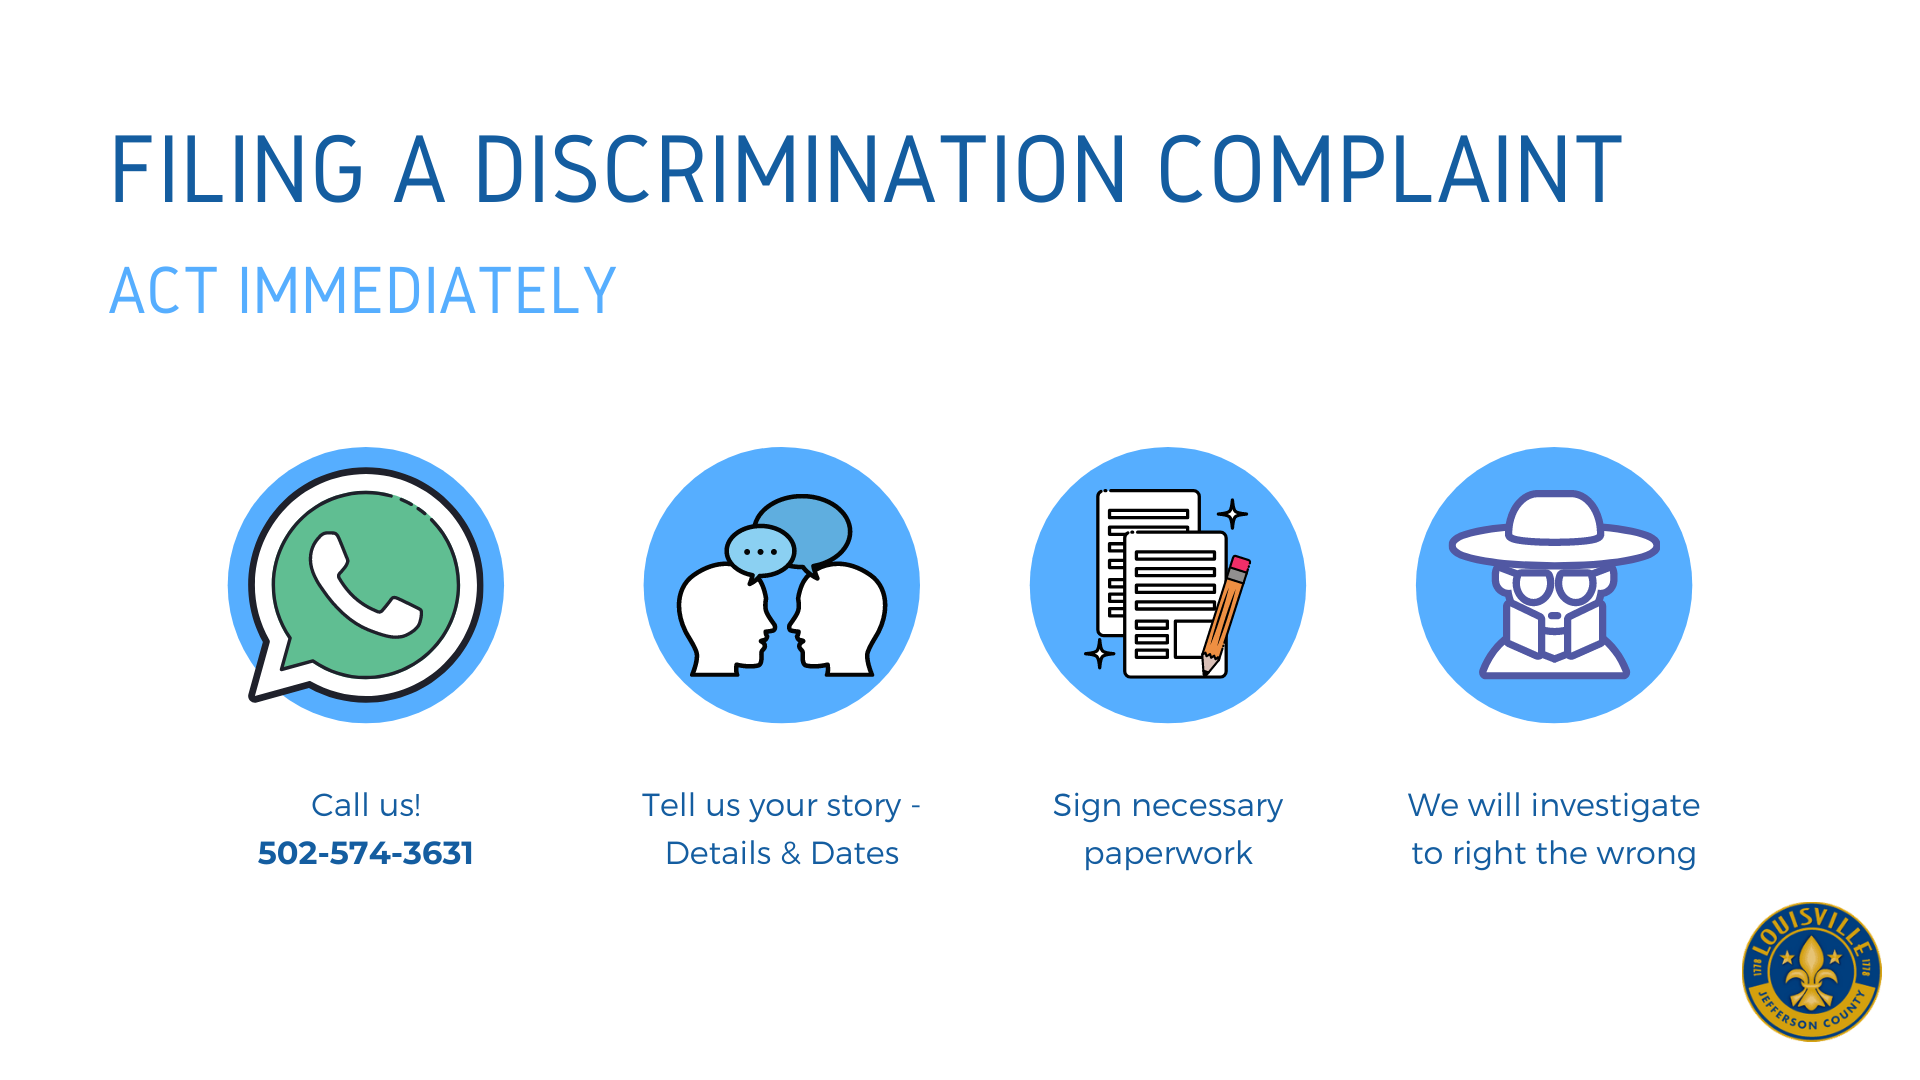 File a Discrimination Complaint